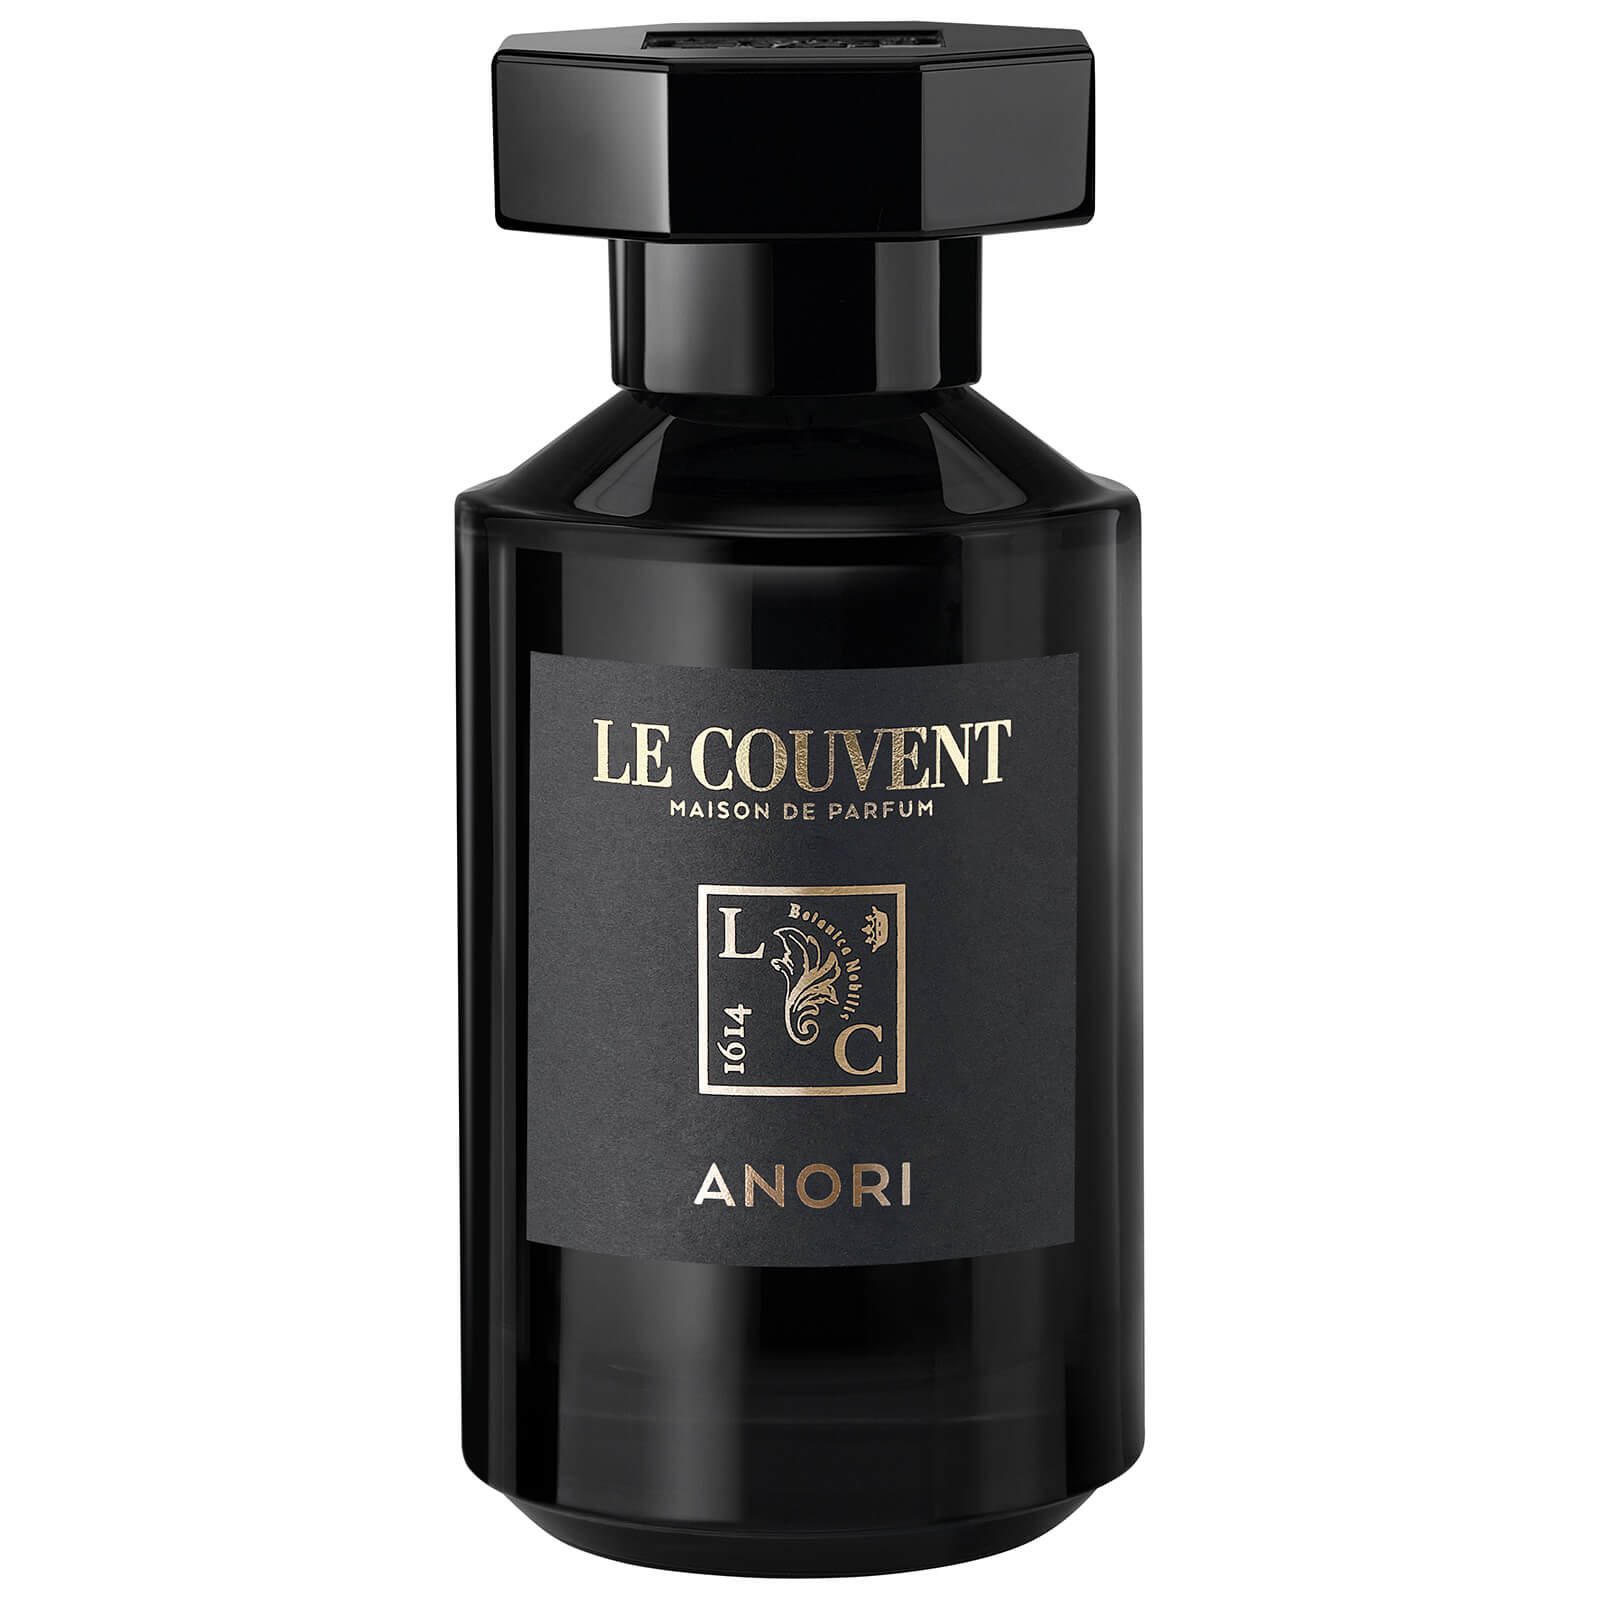 Le Couvent Maison de Parfums Anori 50ml